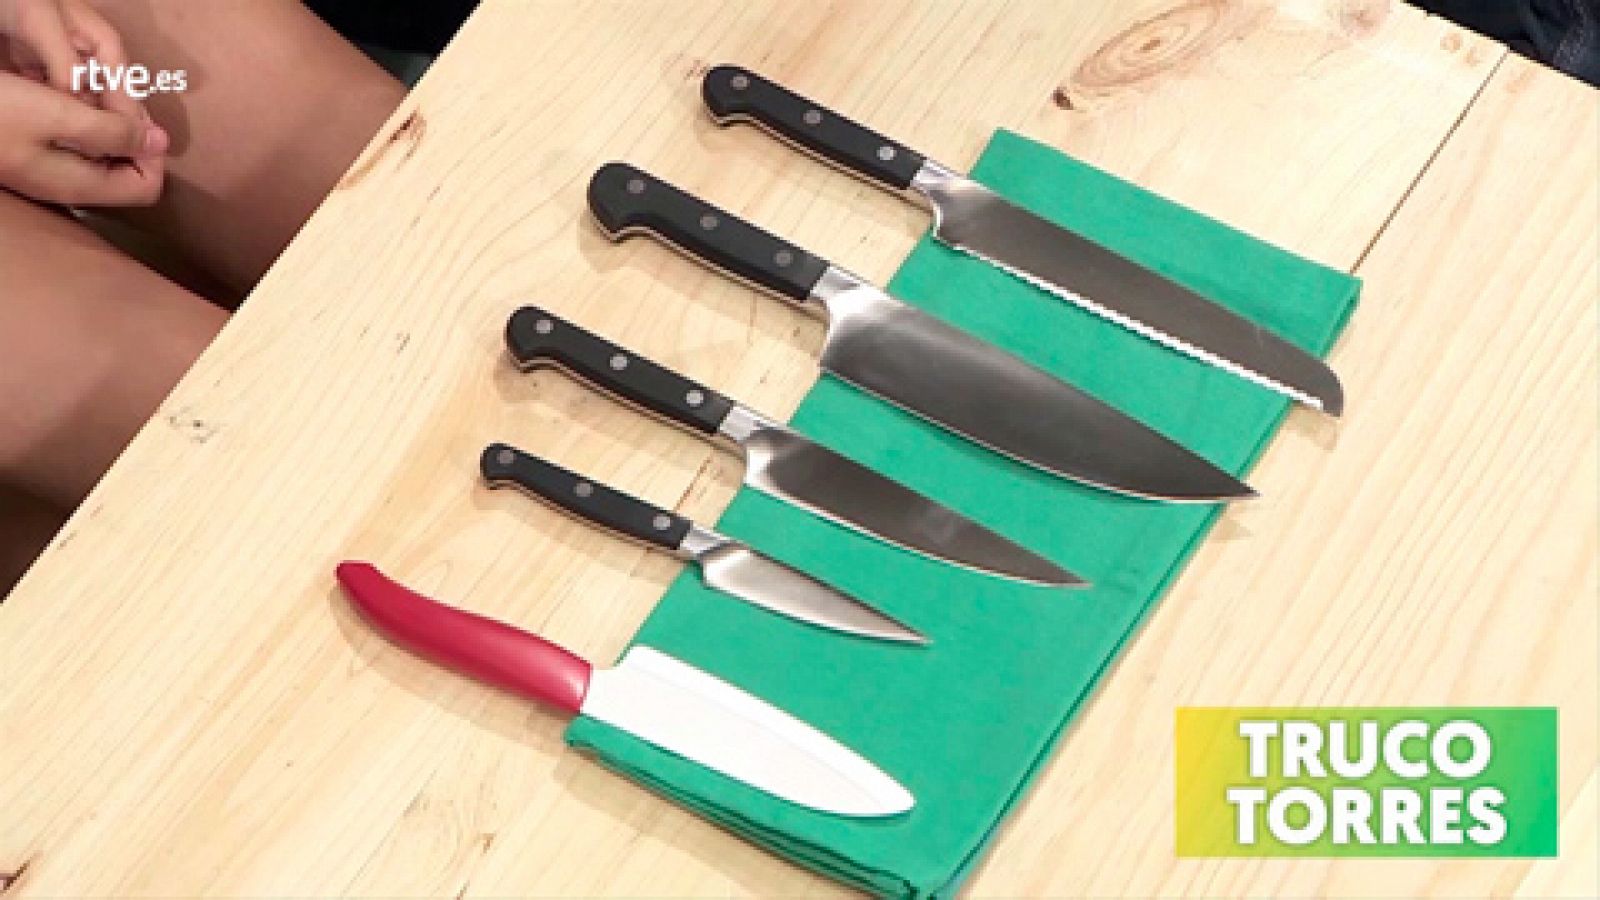 Trucos de cocina - Cómo utilizar correctamente los cuchillos